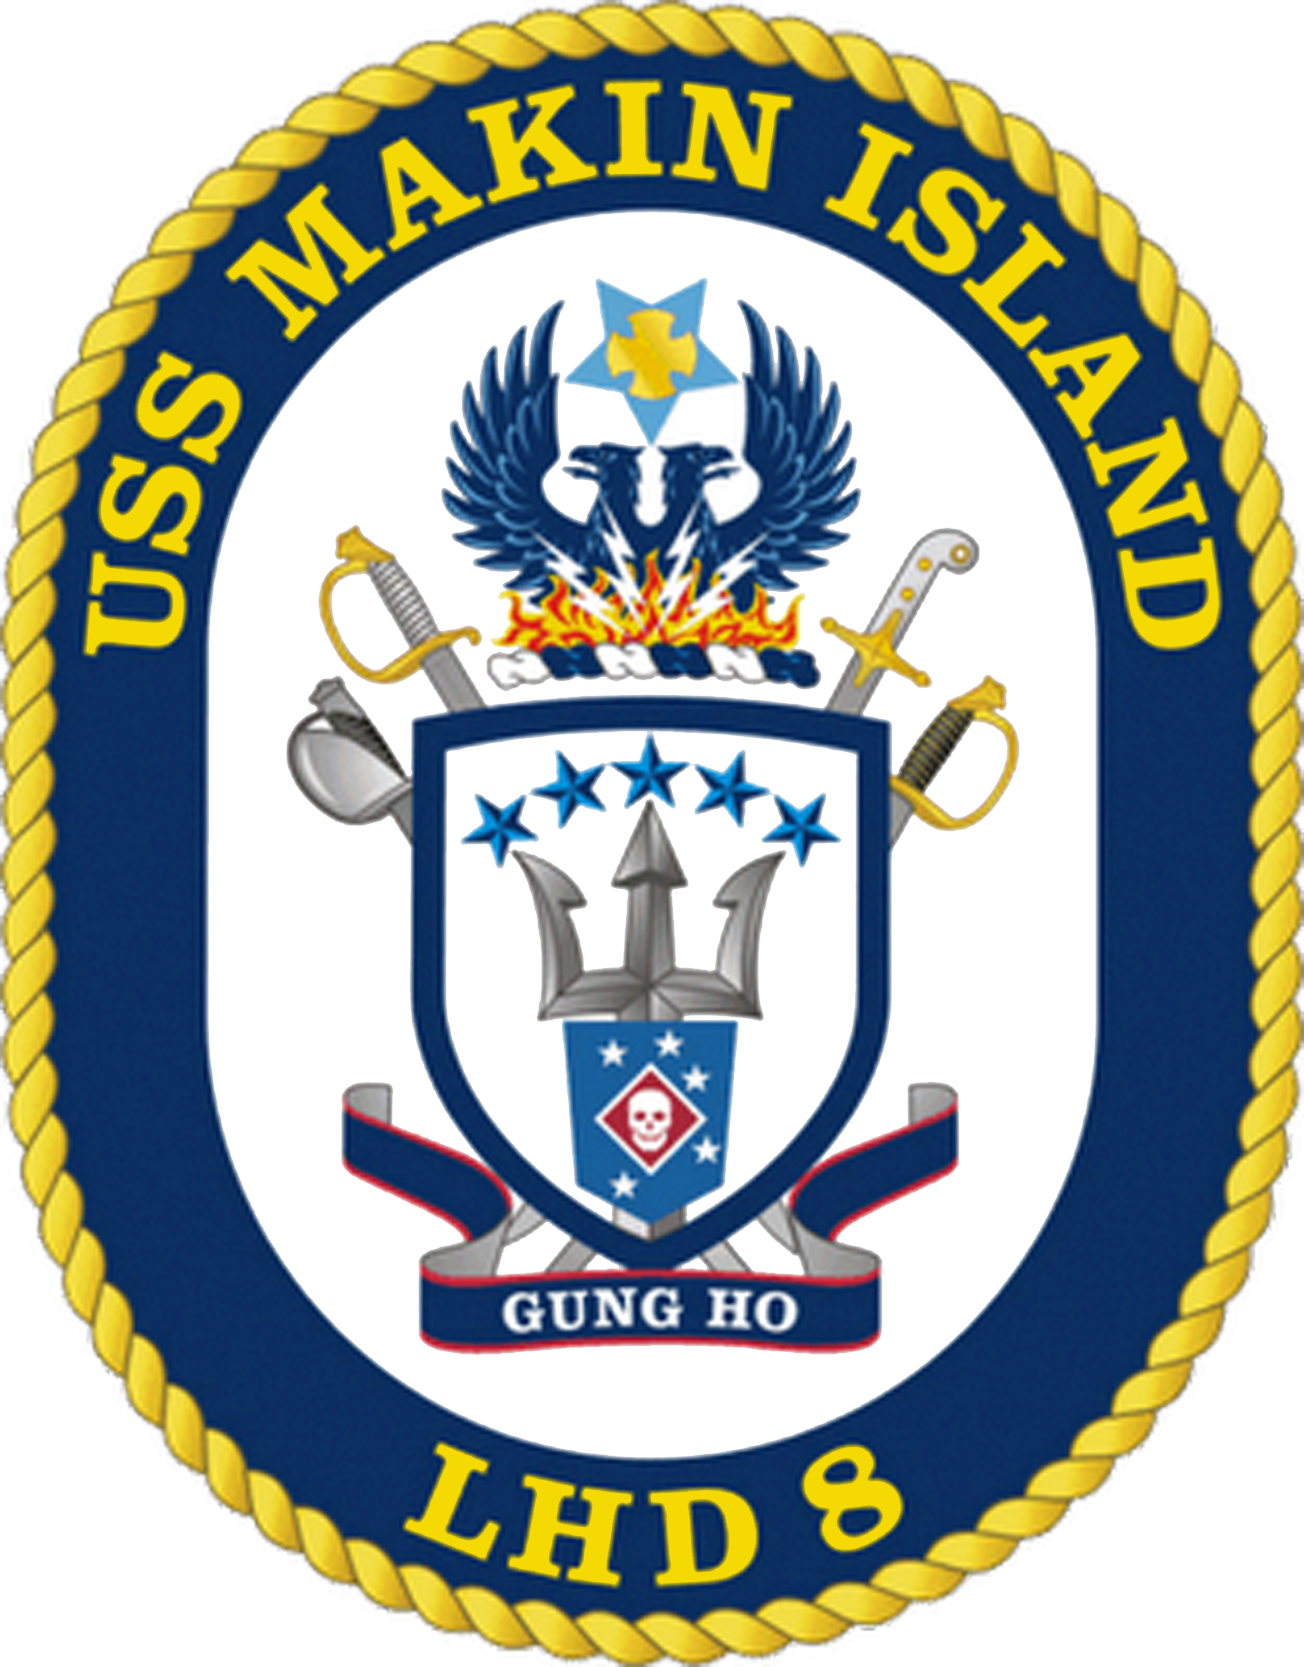 USS MAKIN ISLAND (LHD 8 ) Crest